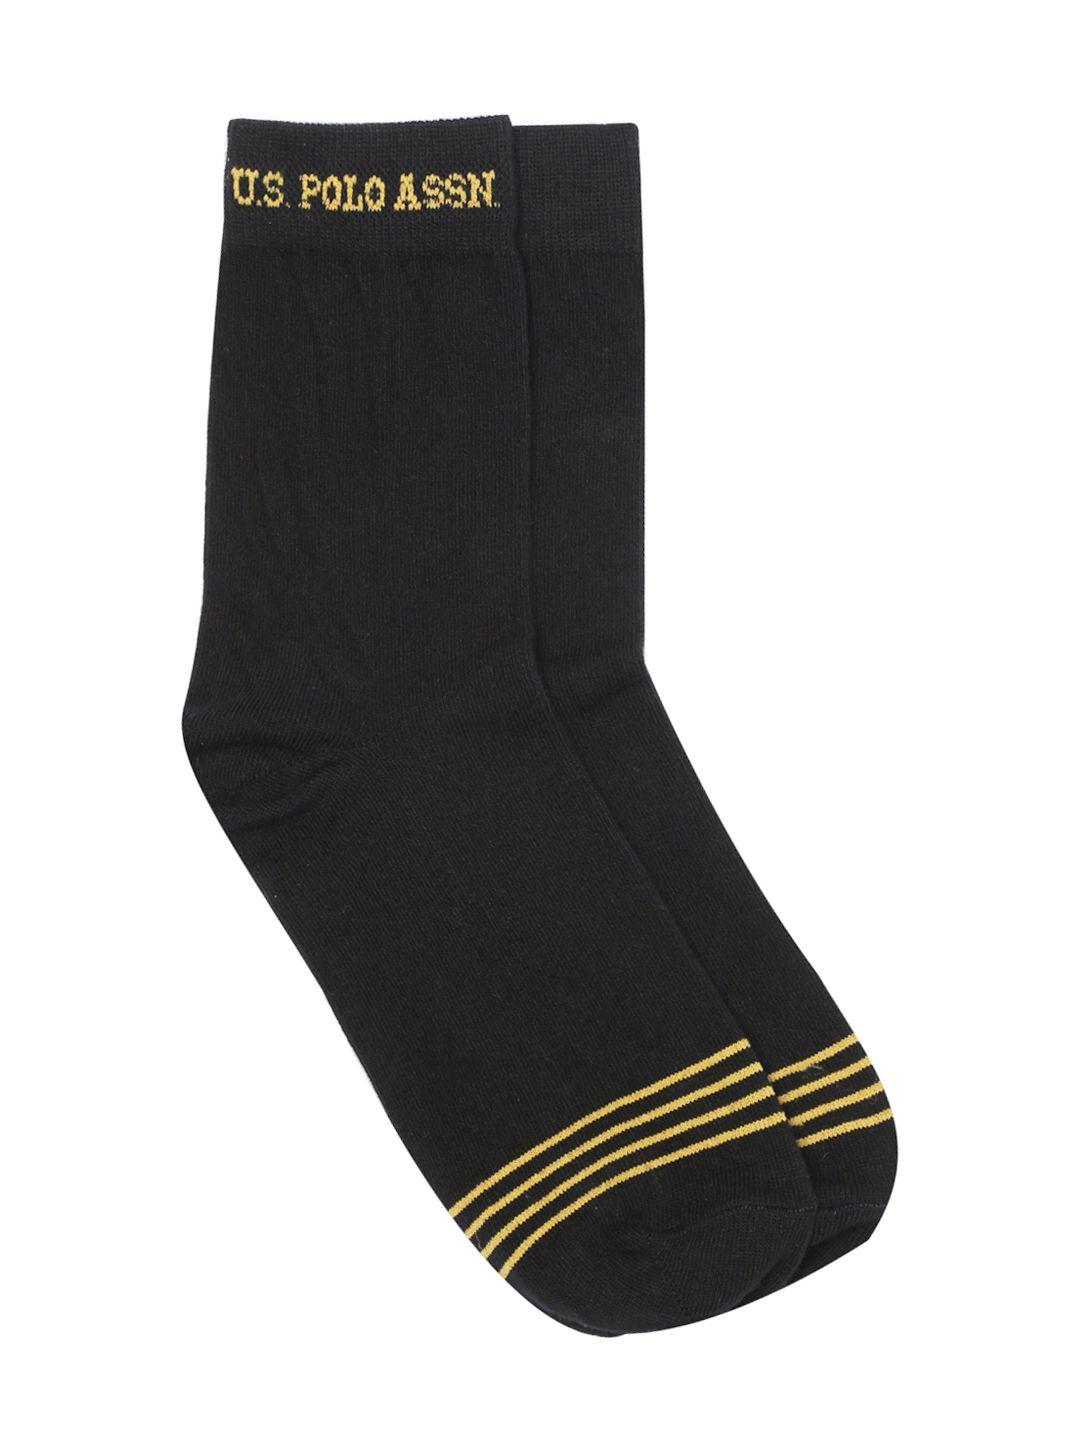 u.s. polo assn. men black patterned calf length socks